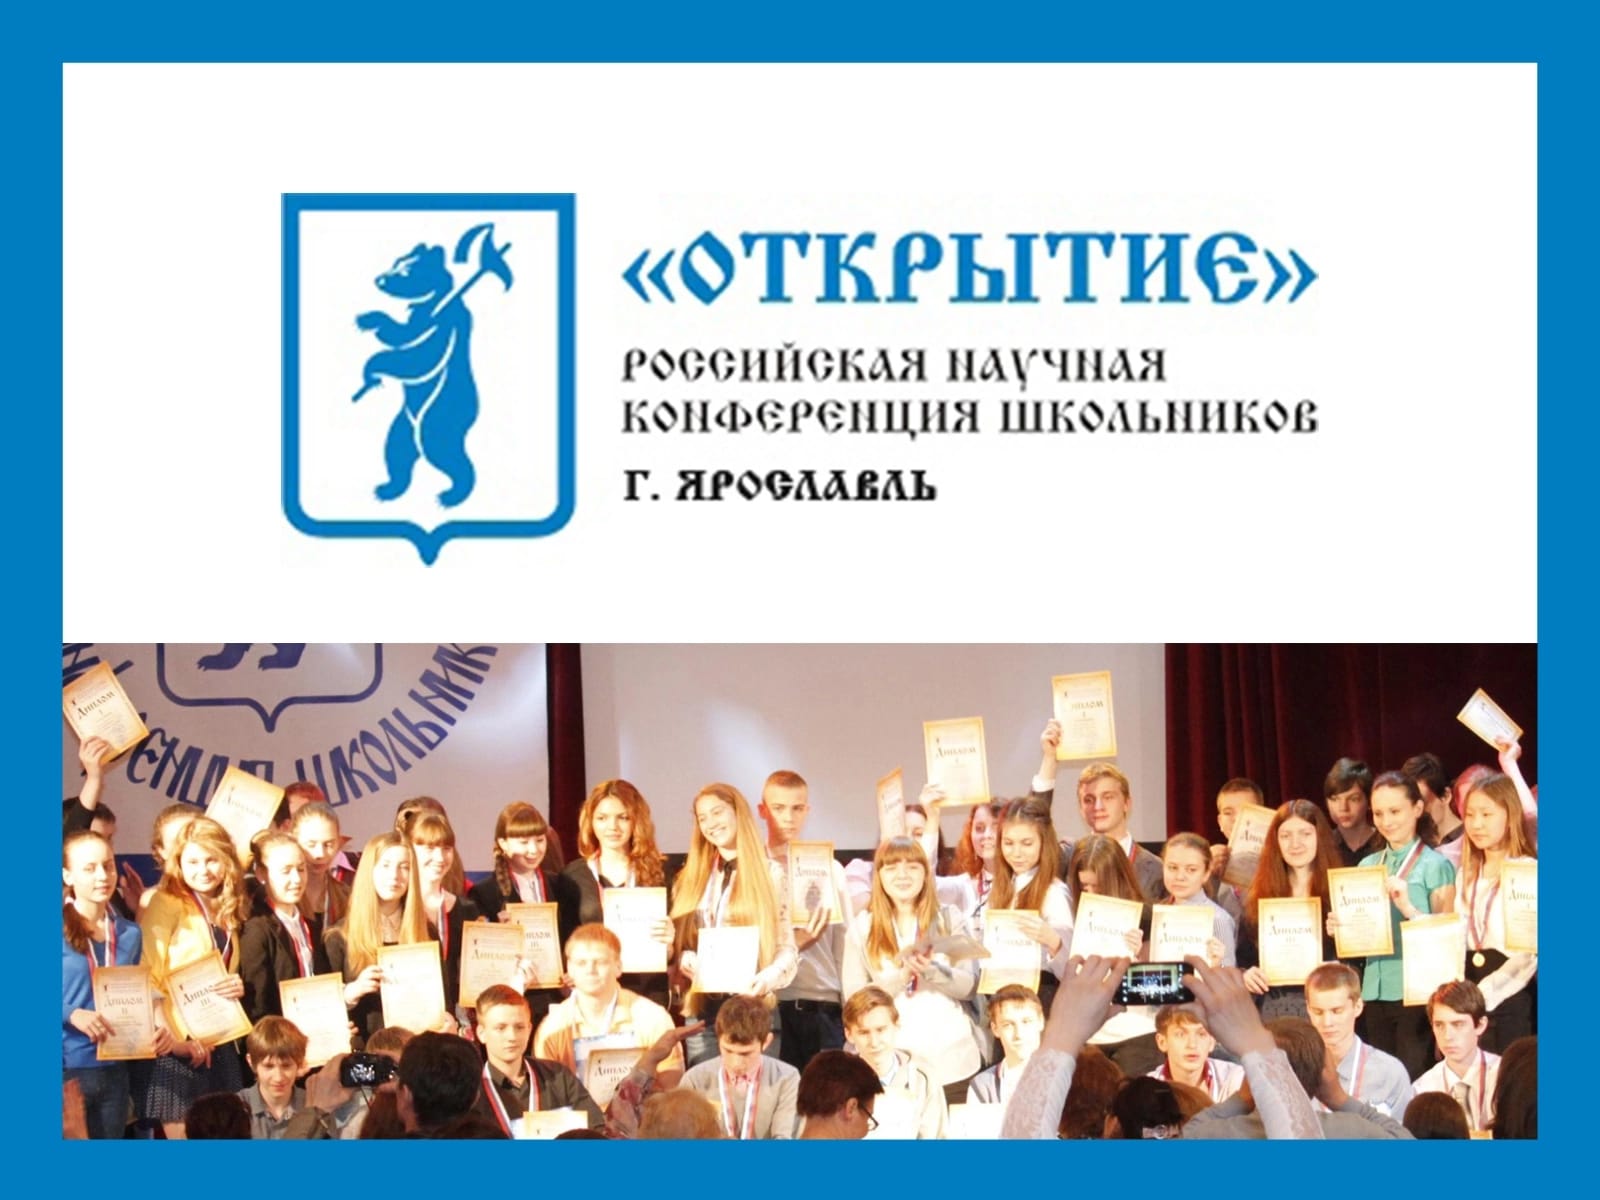 Ярославские школьники могут стать участниками XXVI российской научной конференции «Открытие»